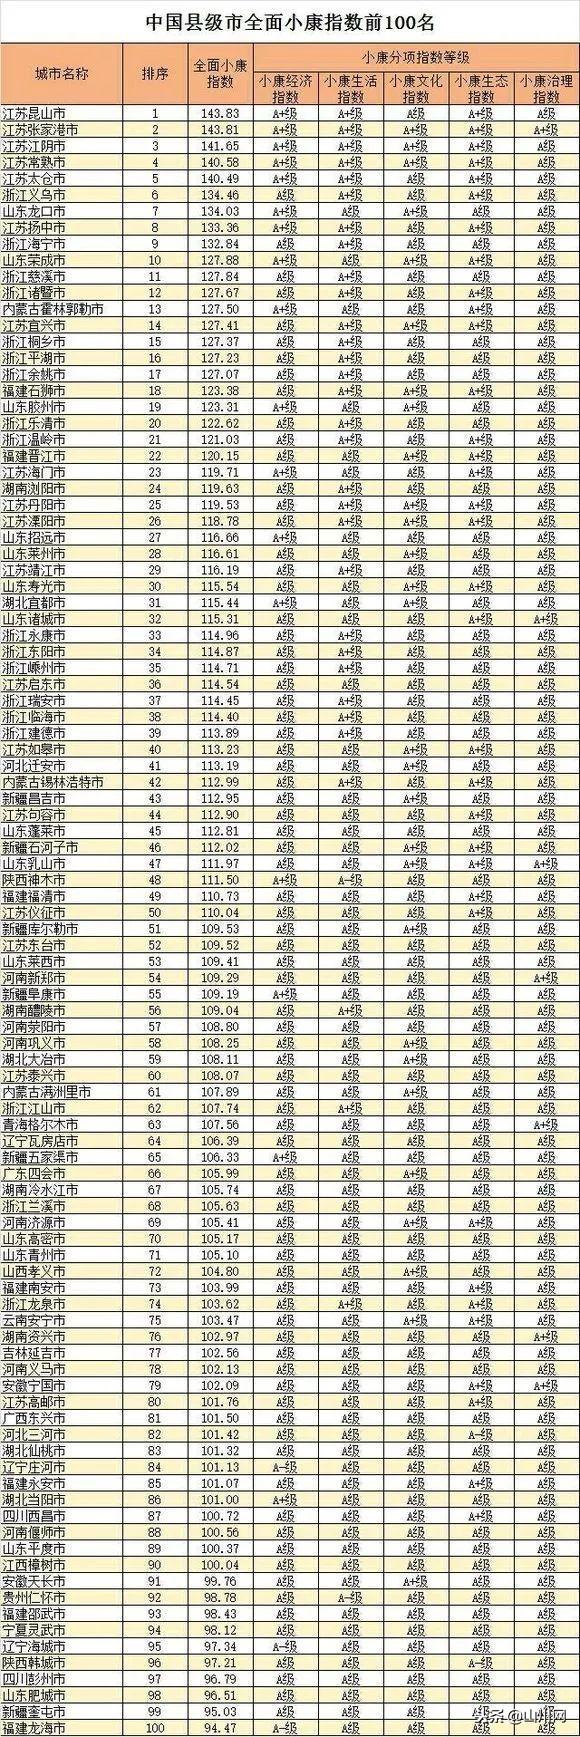 2018年中国地级市、县级市全面小康指数前100名榜单